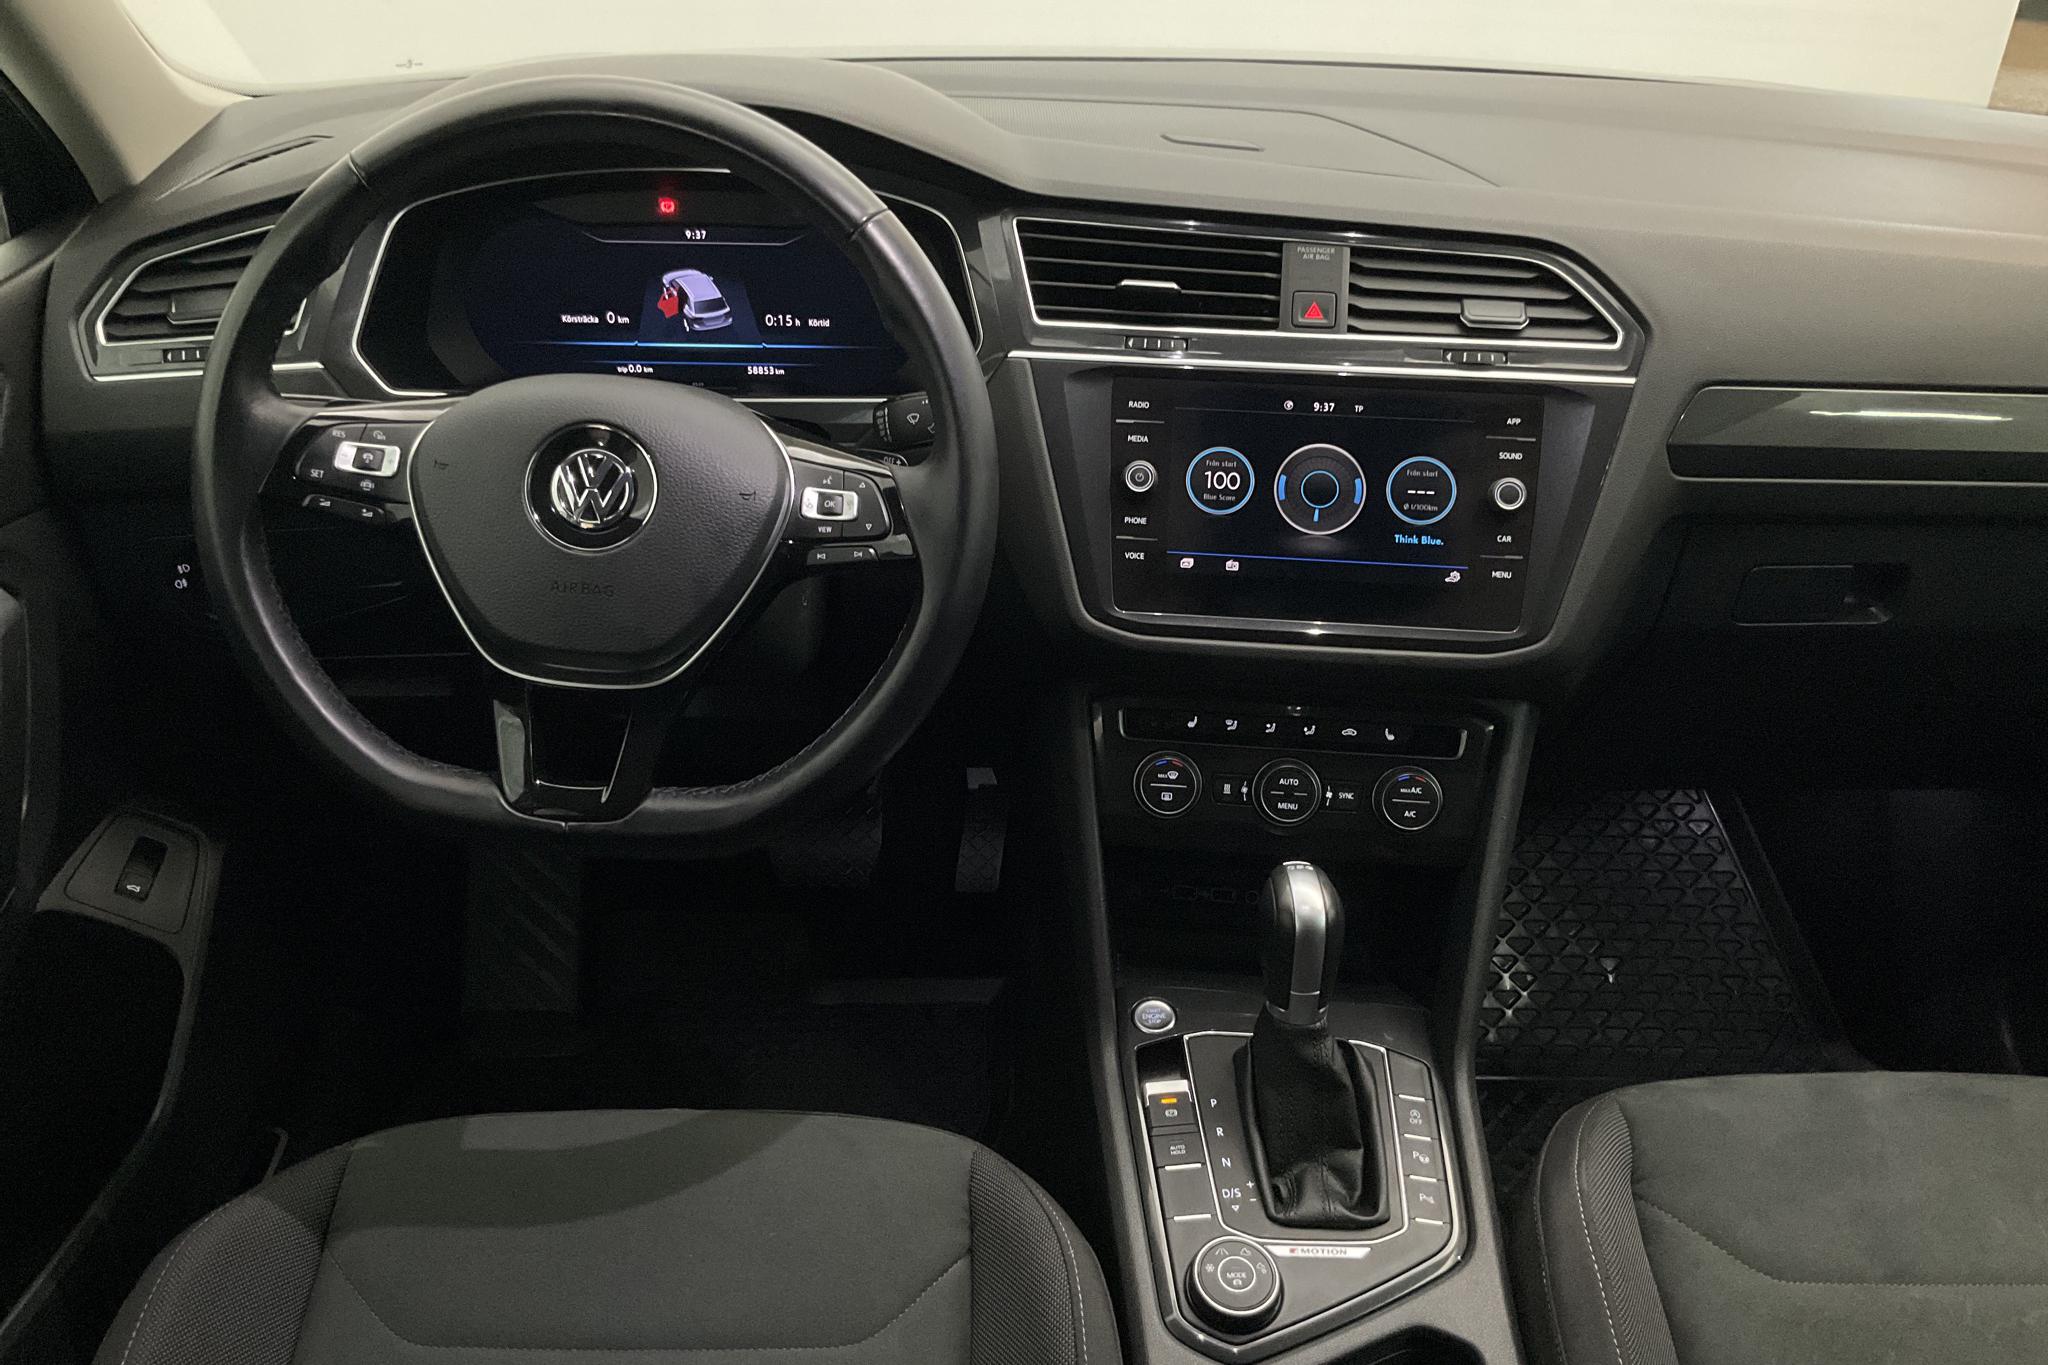 VW Tiguan Allspace 2.0 TDI 4MOTION (190hk) - 58 850 km - Automatic - gray - 2019